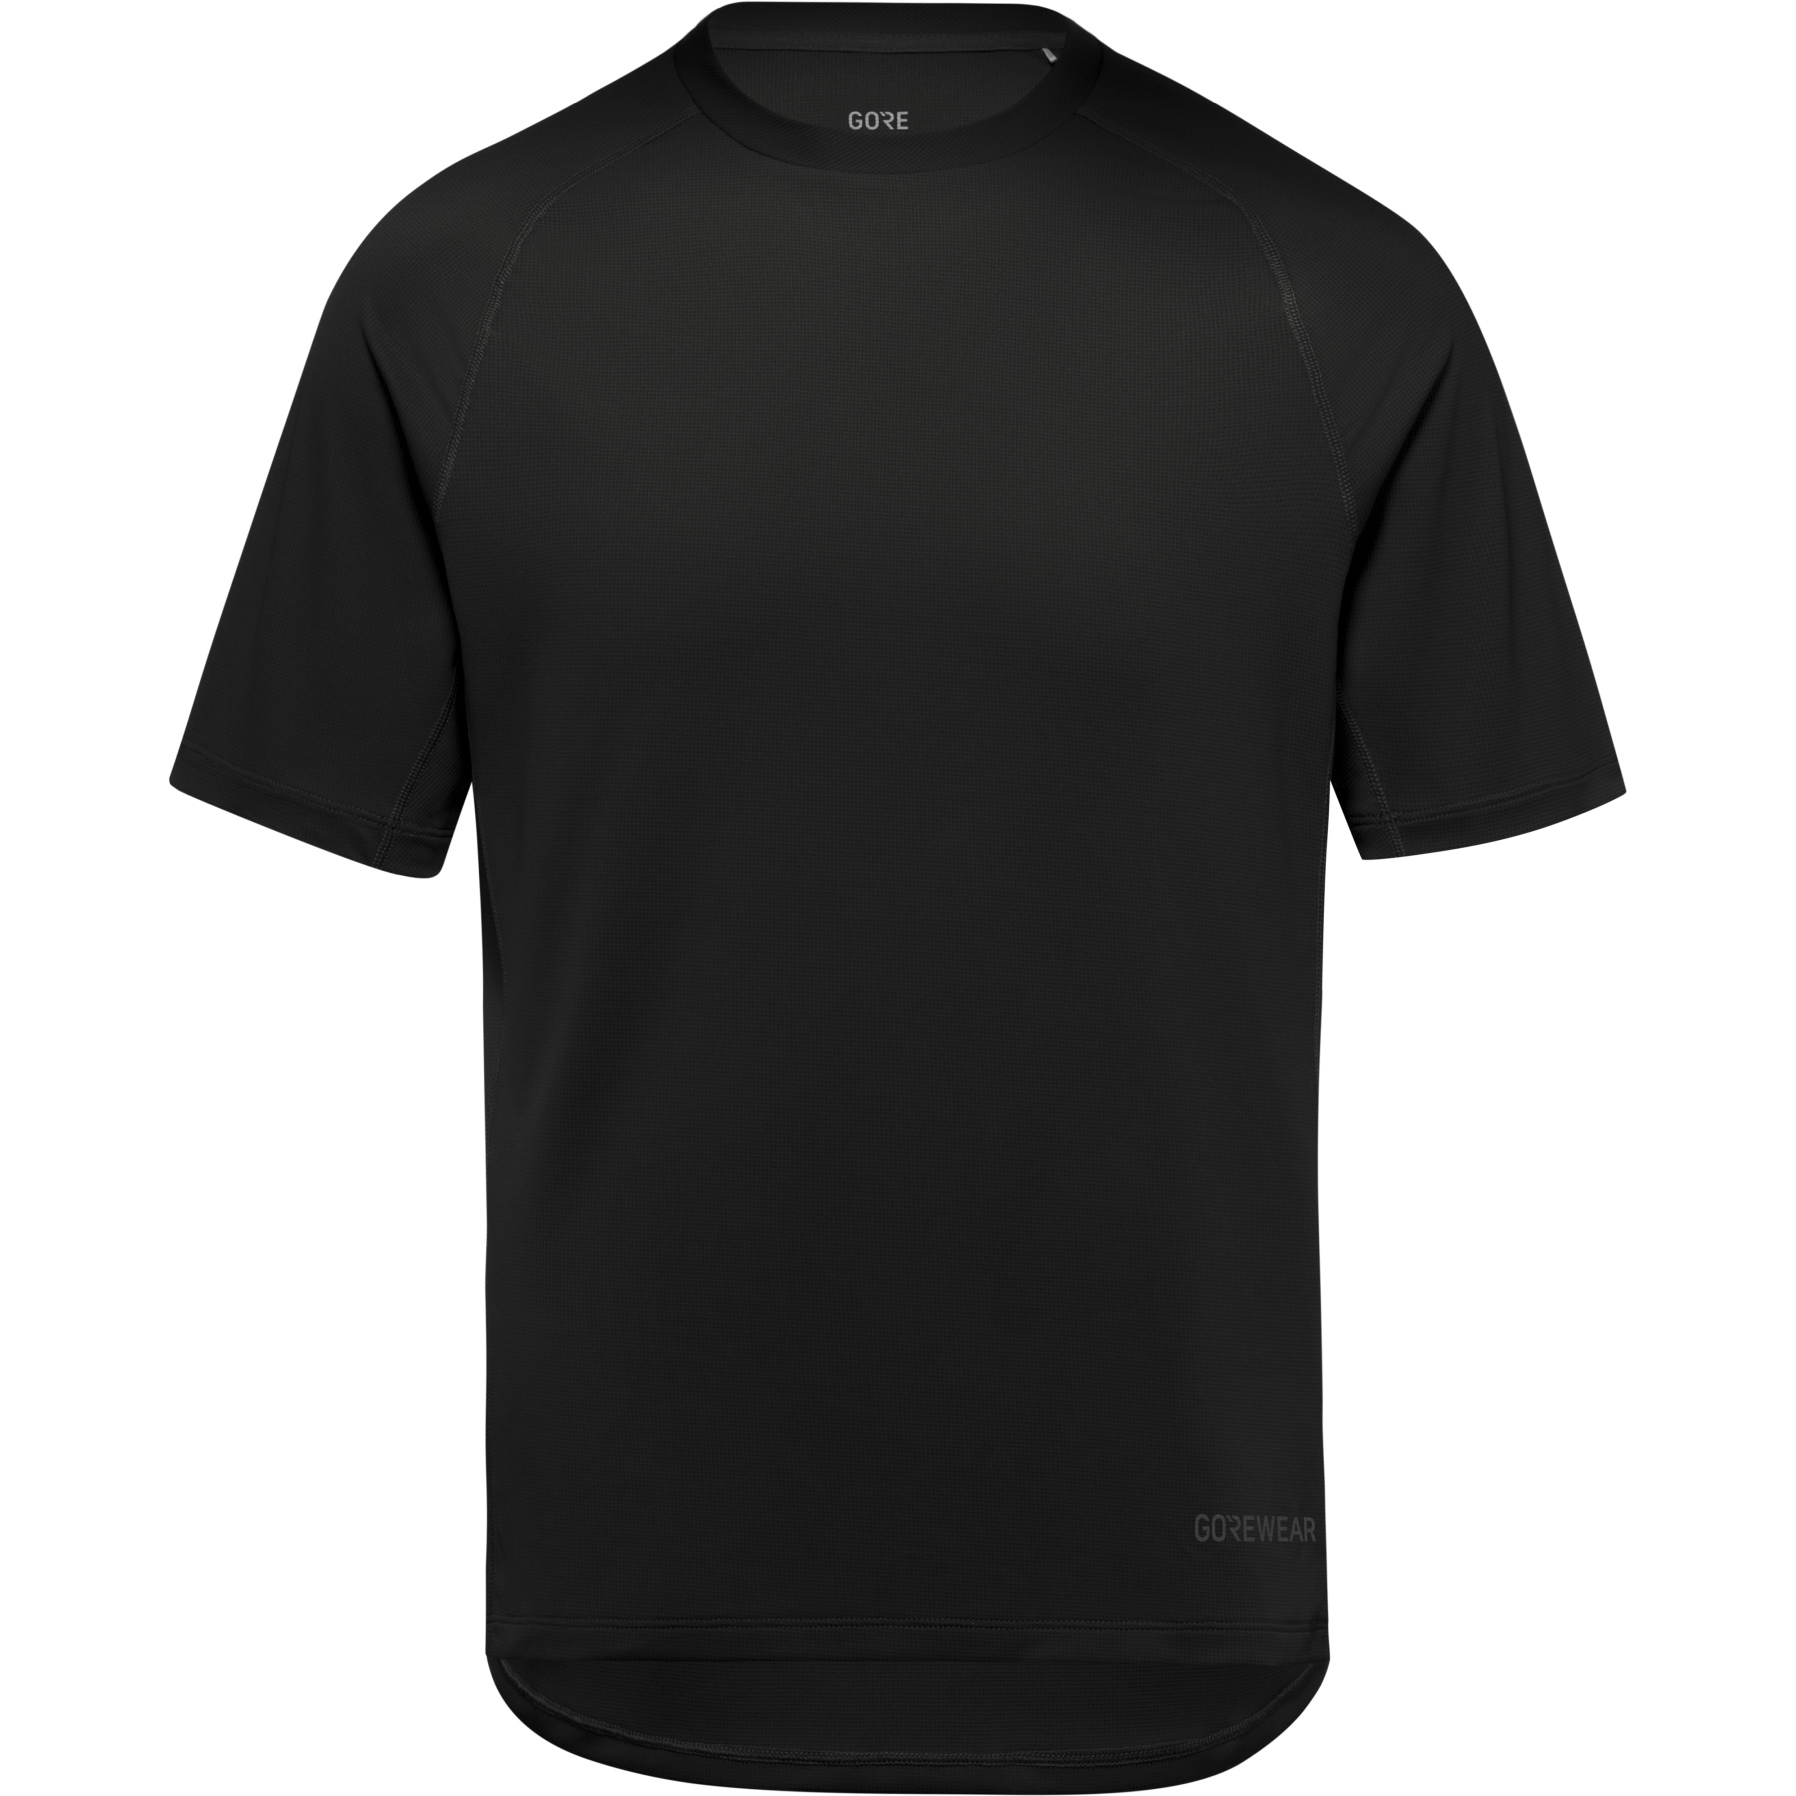 Produktbild von GOREWEAR Everyday T-Shirt Herren - schwarz 9900